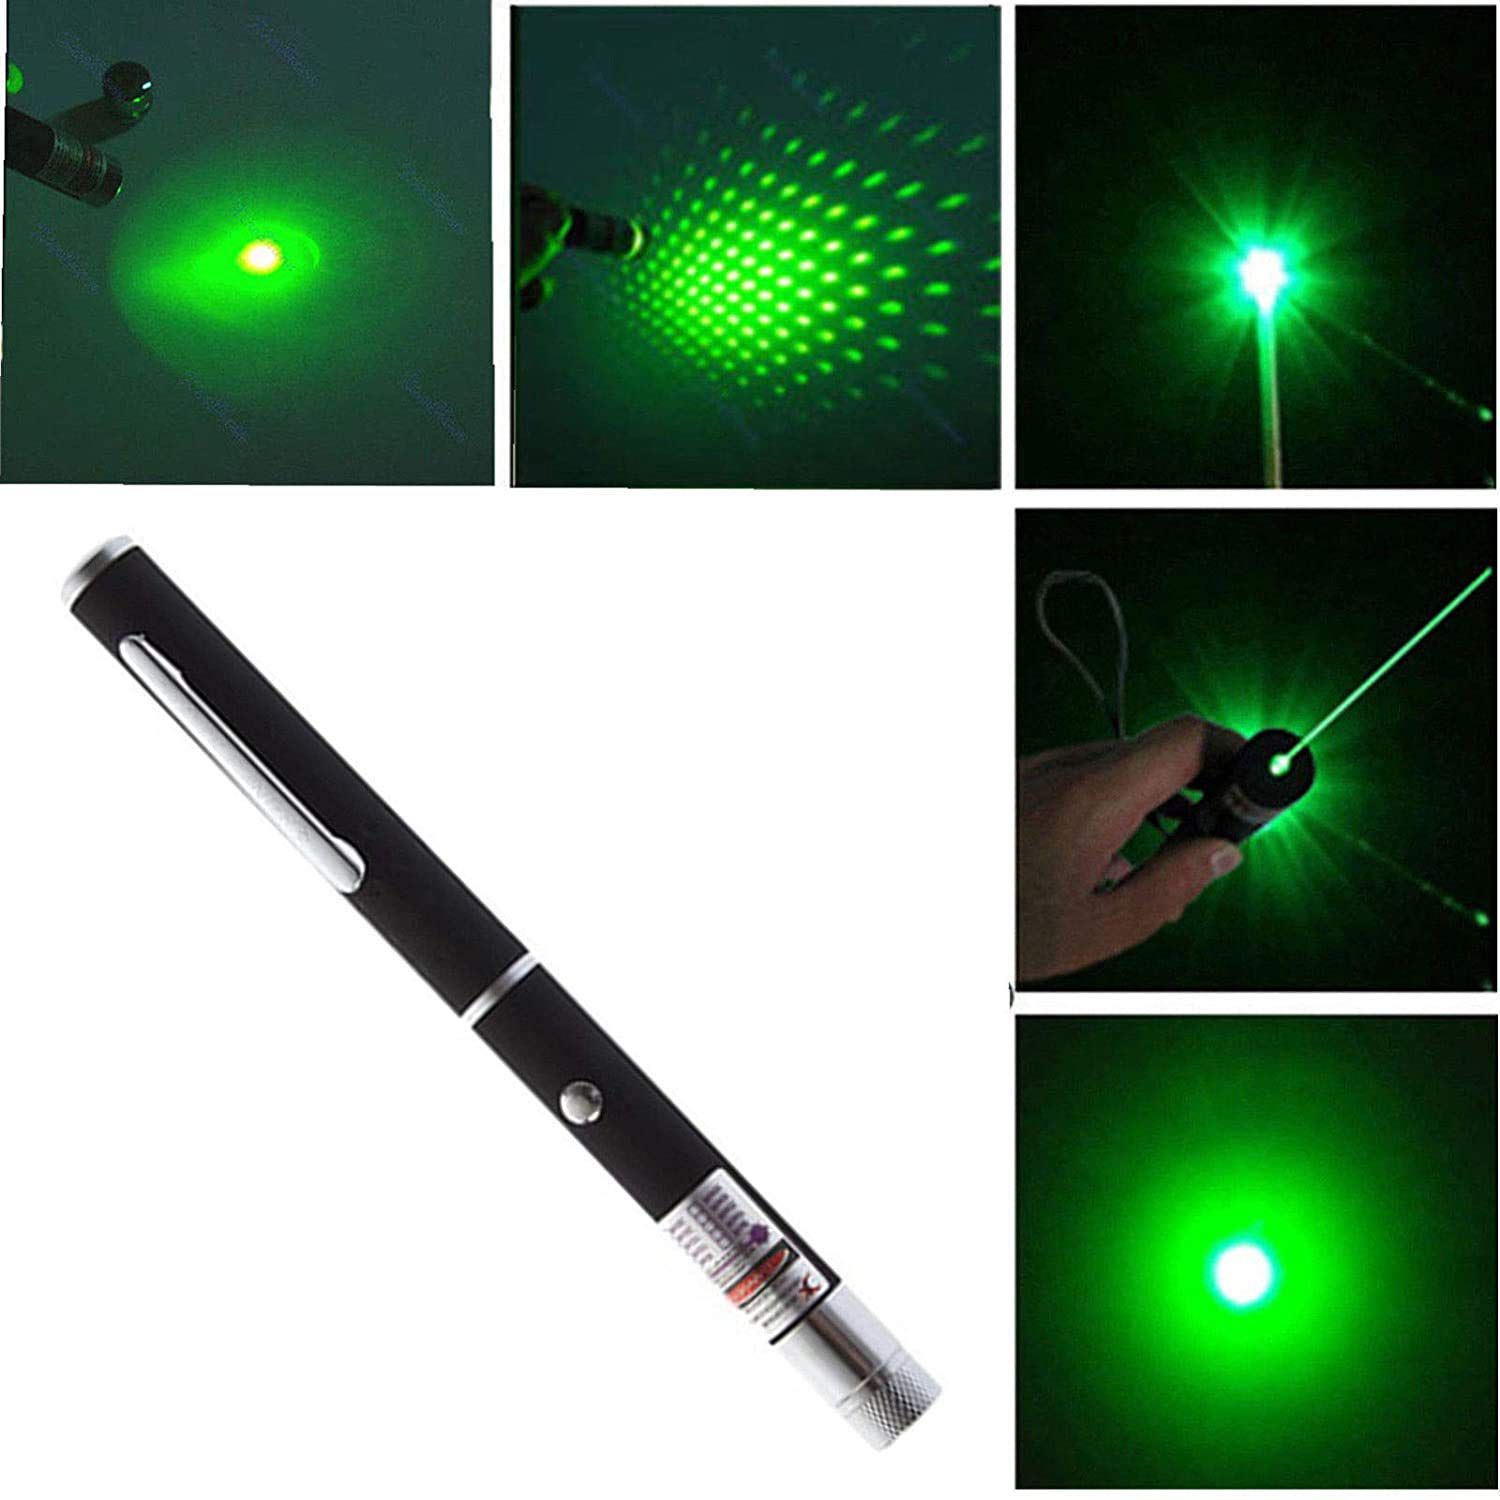     			FSN Green Laser Pointer Light with 5 pattern pointer